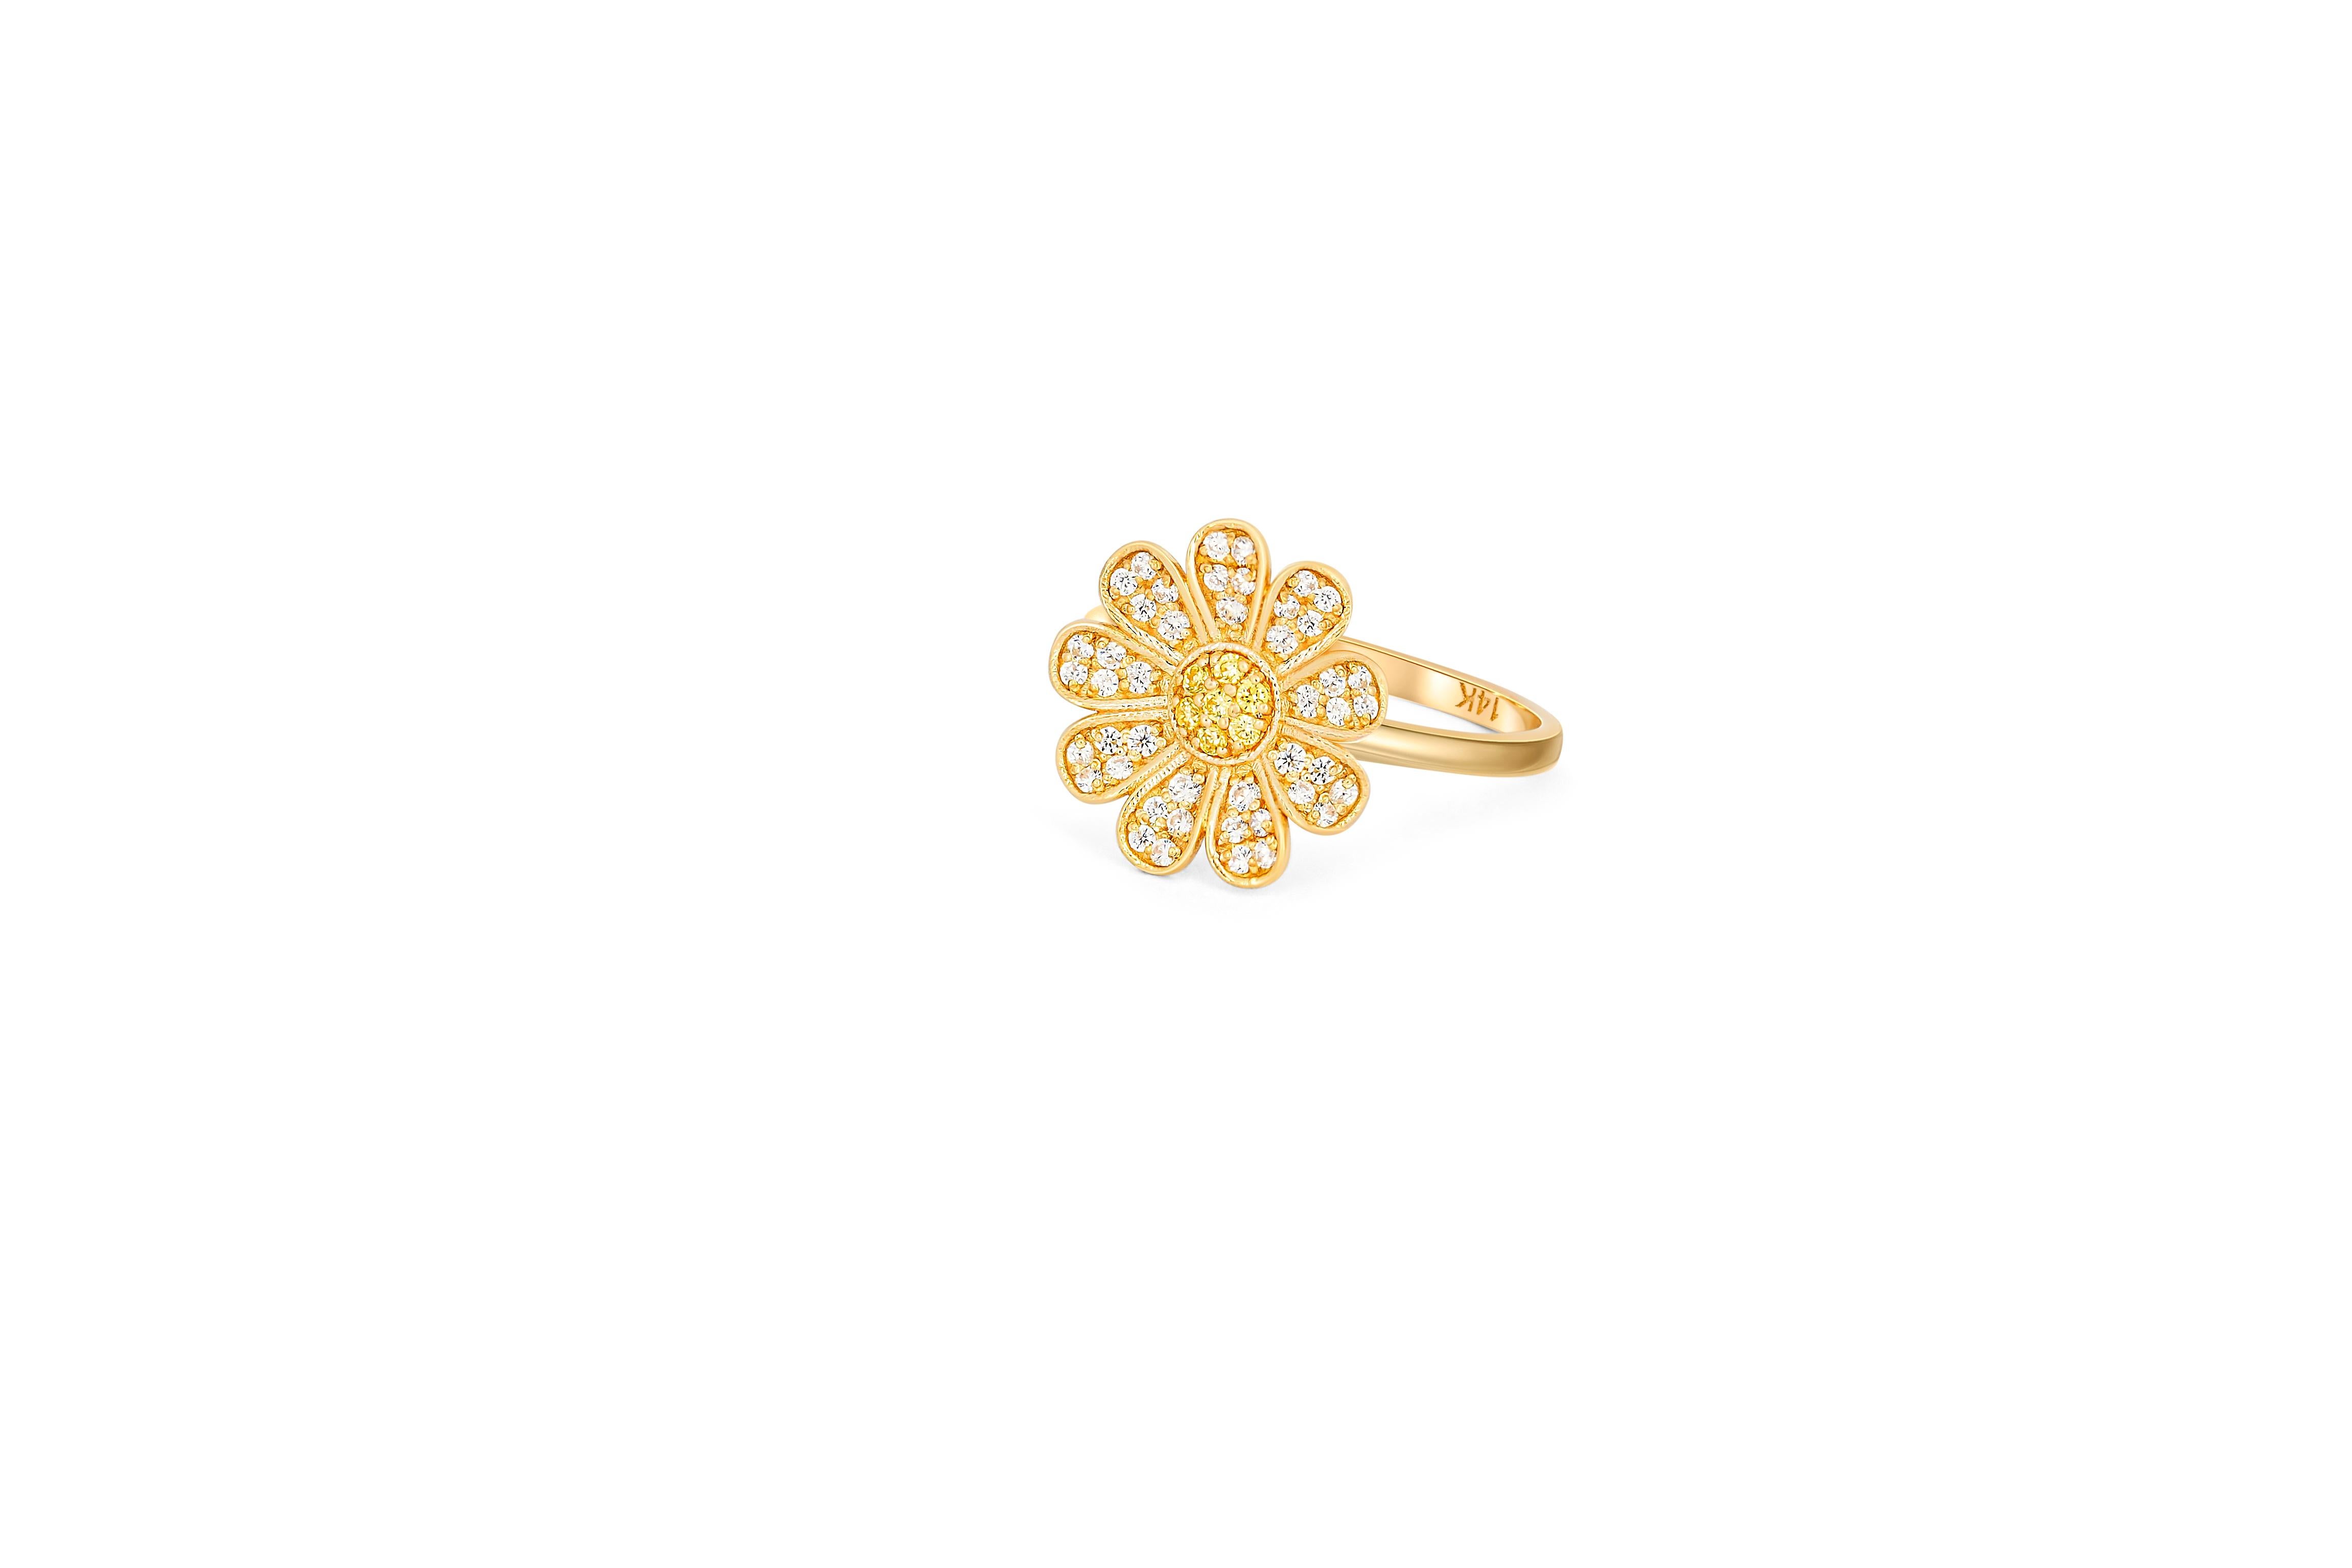 For Sale:  Daisy flower 14k gold ring.  9